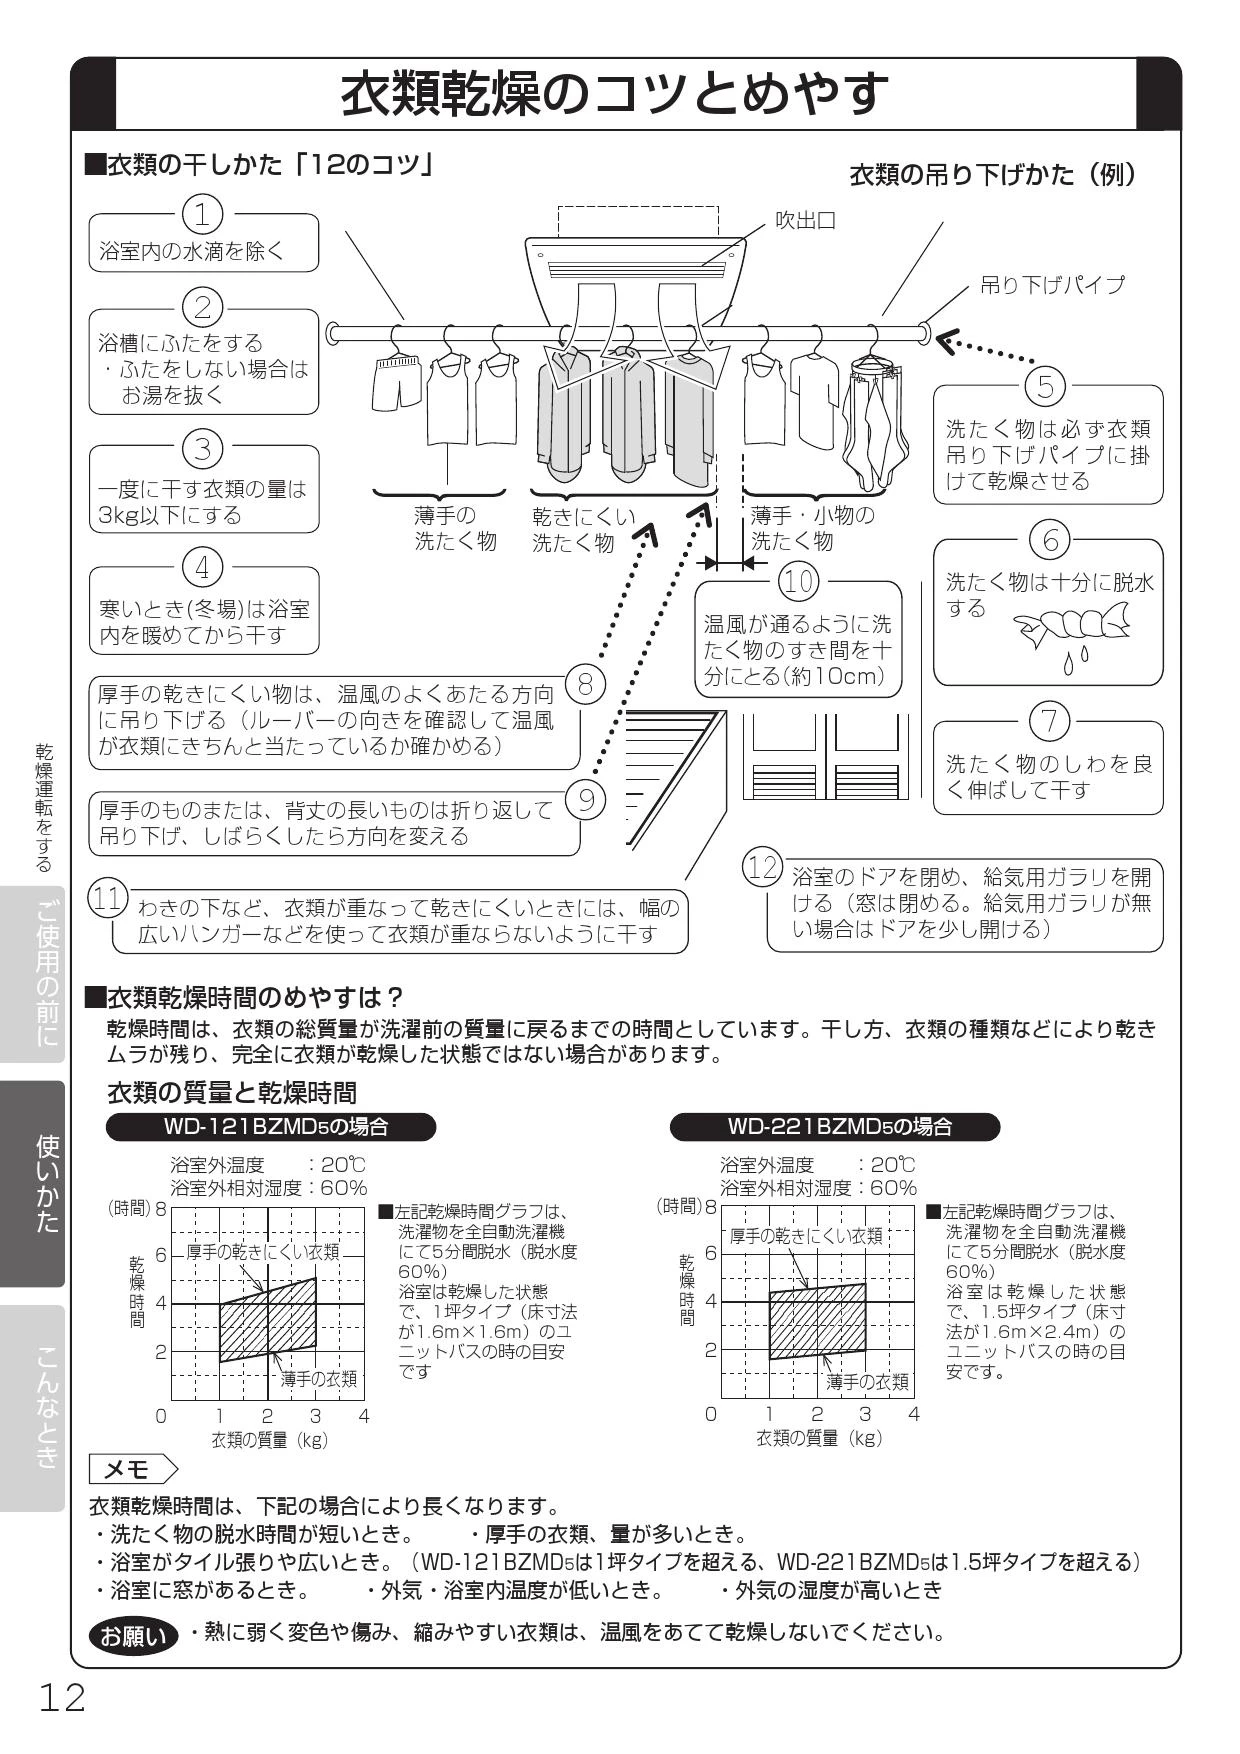 三菱電機 WD-121BZMD5 取扱説明書 施工説明書 納入仕様図|三菱電機 ...